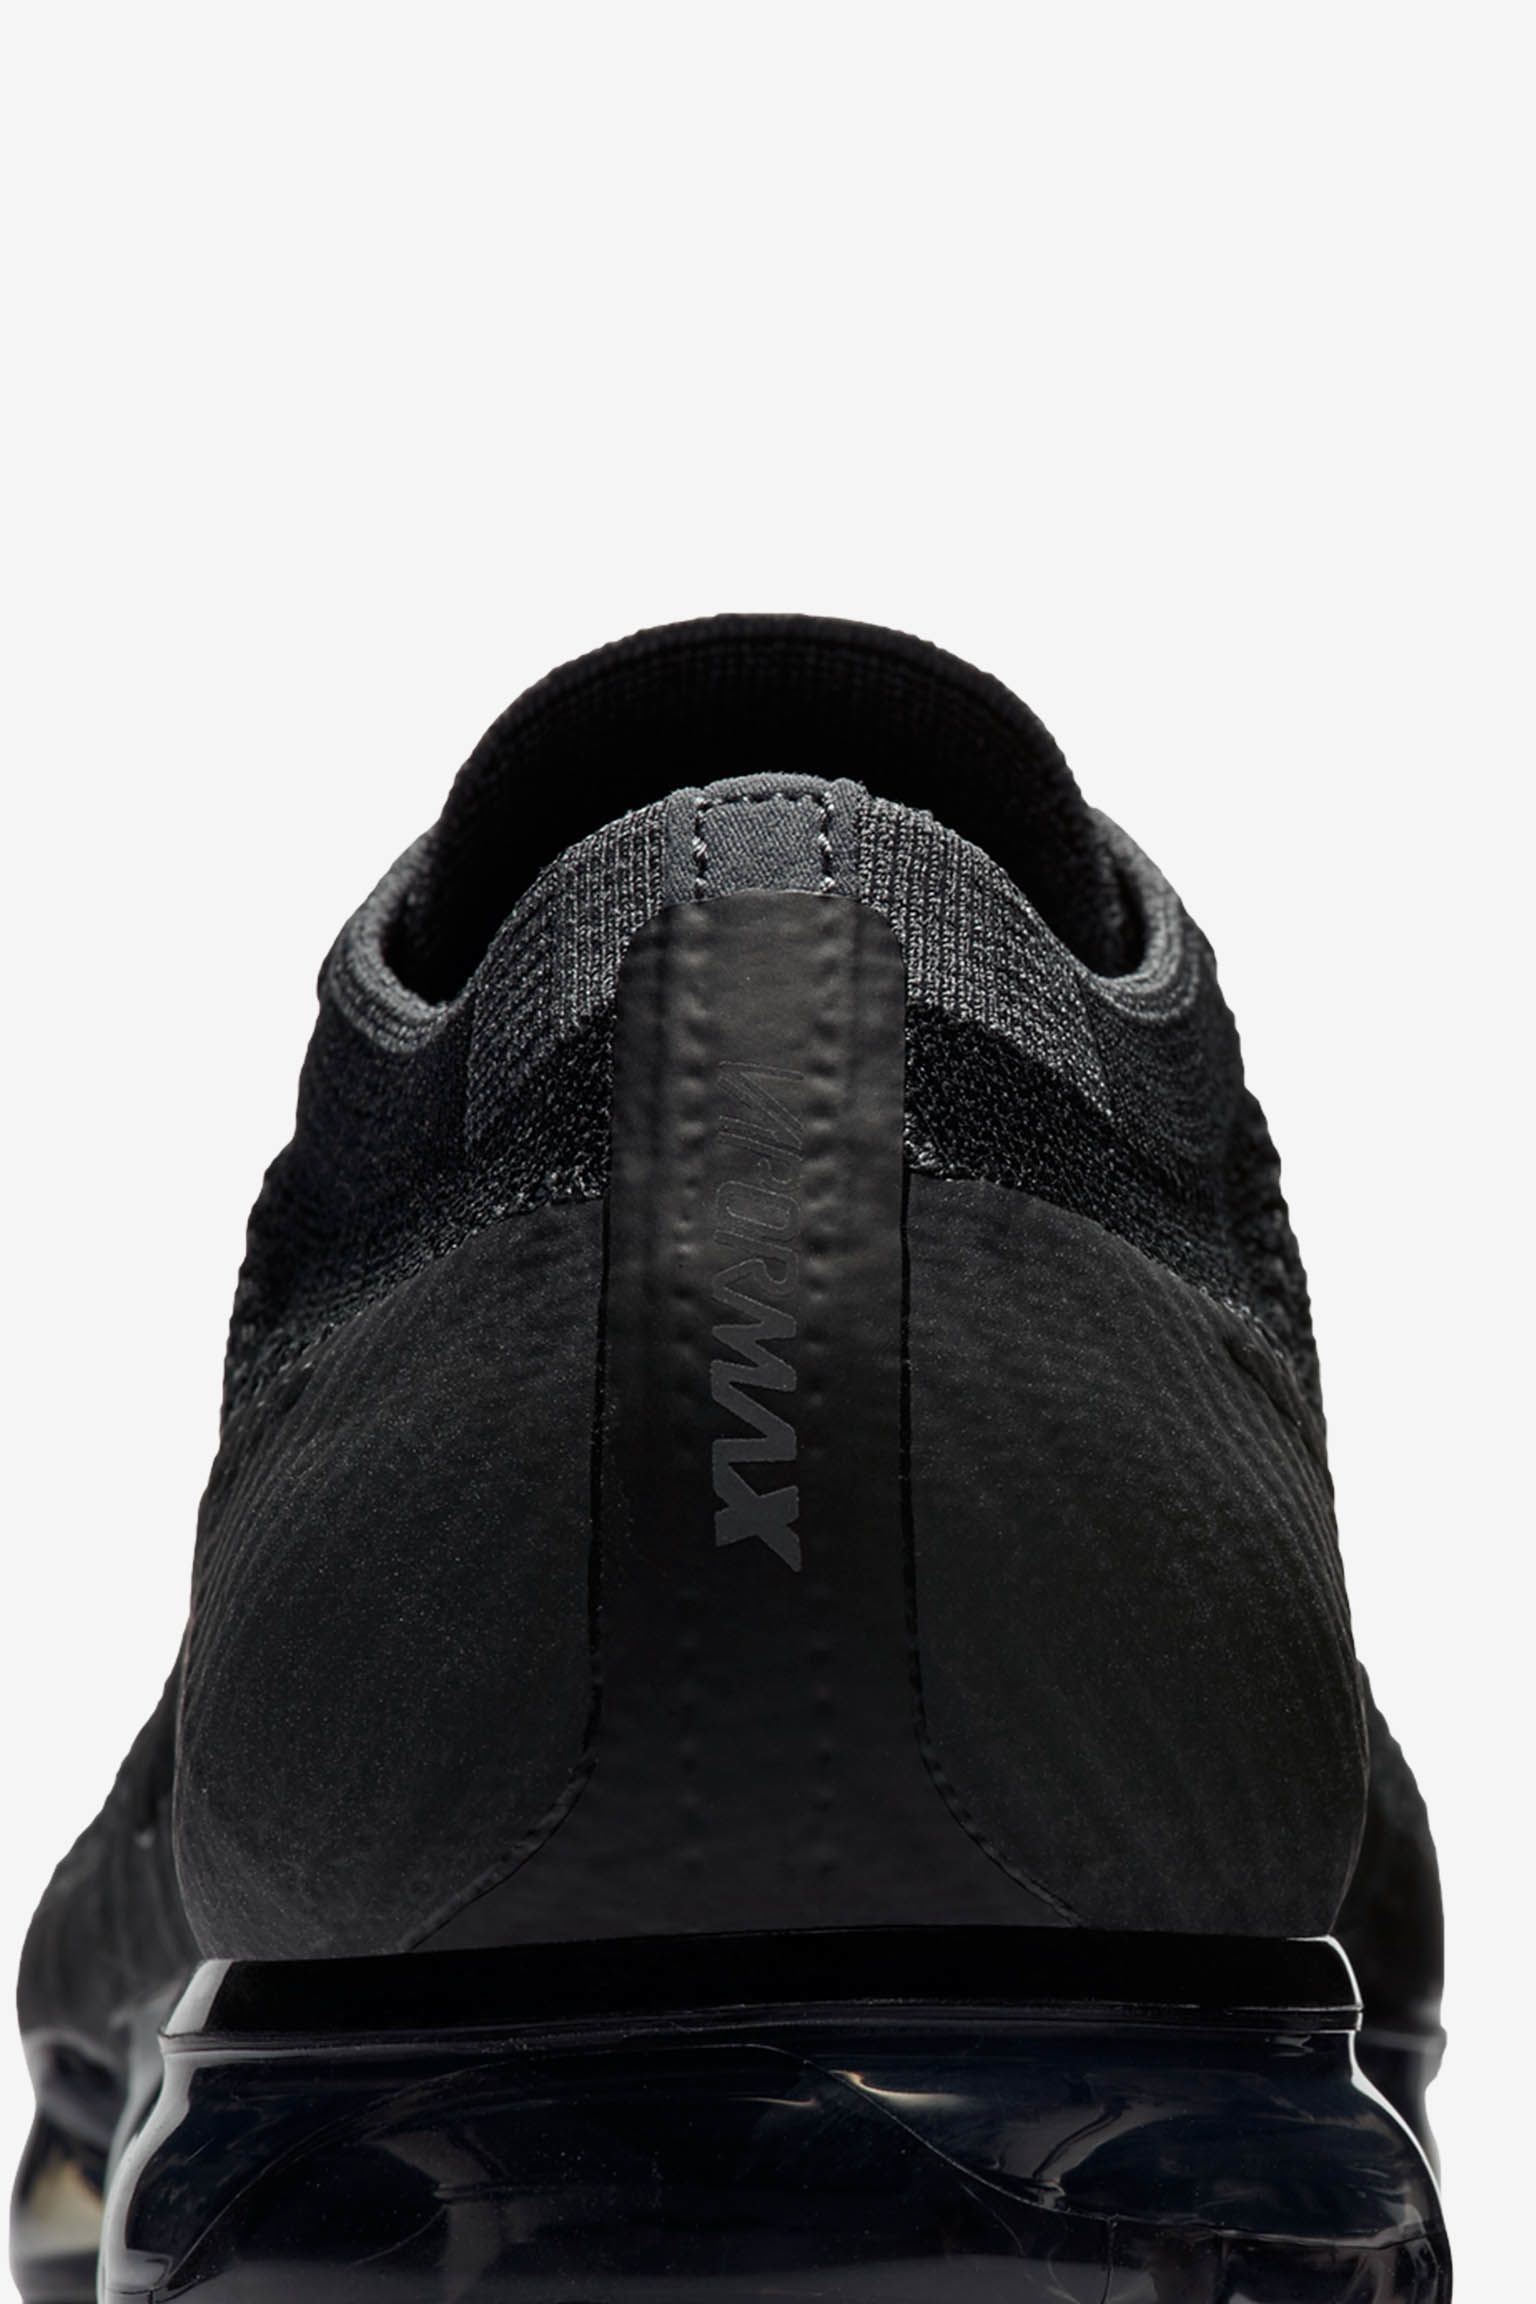 NIKE公式】ナイキ エア ヴェイパーマックス 'BLACK/ANTHRACITE'. Nike